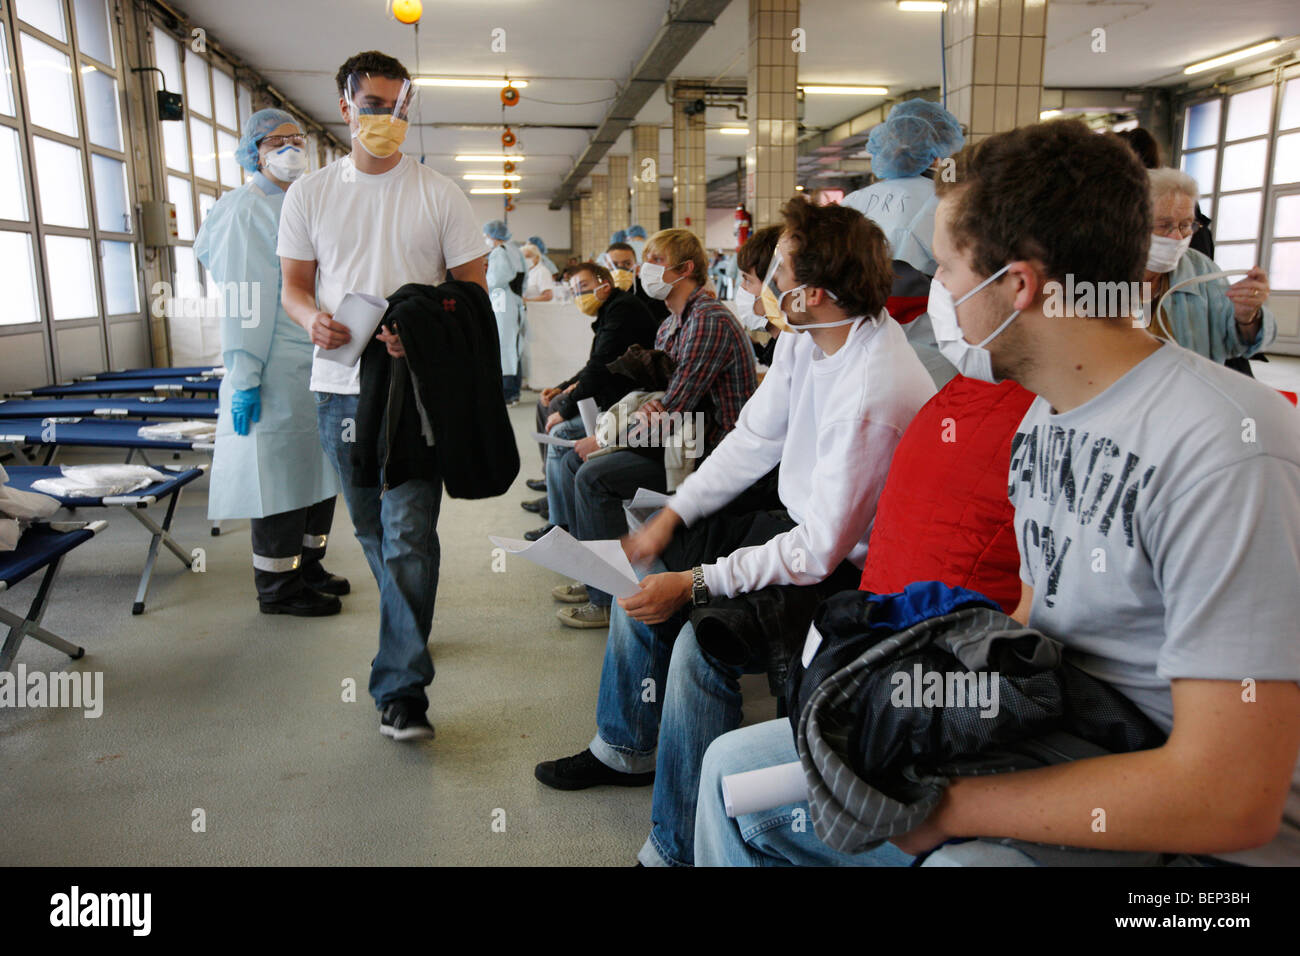 Ausübung einer Feuerwehr, Massenimpfung von Menschen gegen einen Virus, Pandemie Übung, Essen, Deutschland. Stockfoto